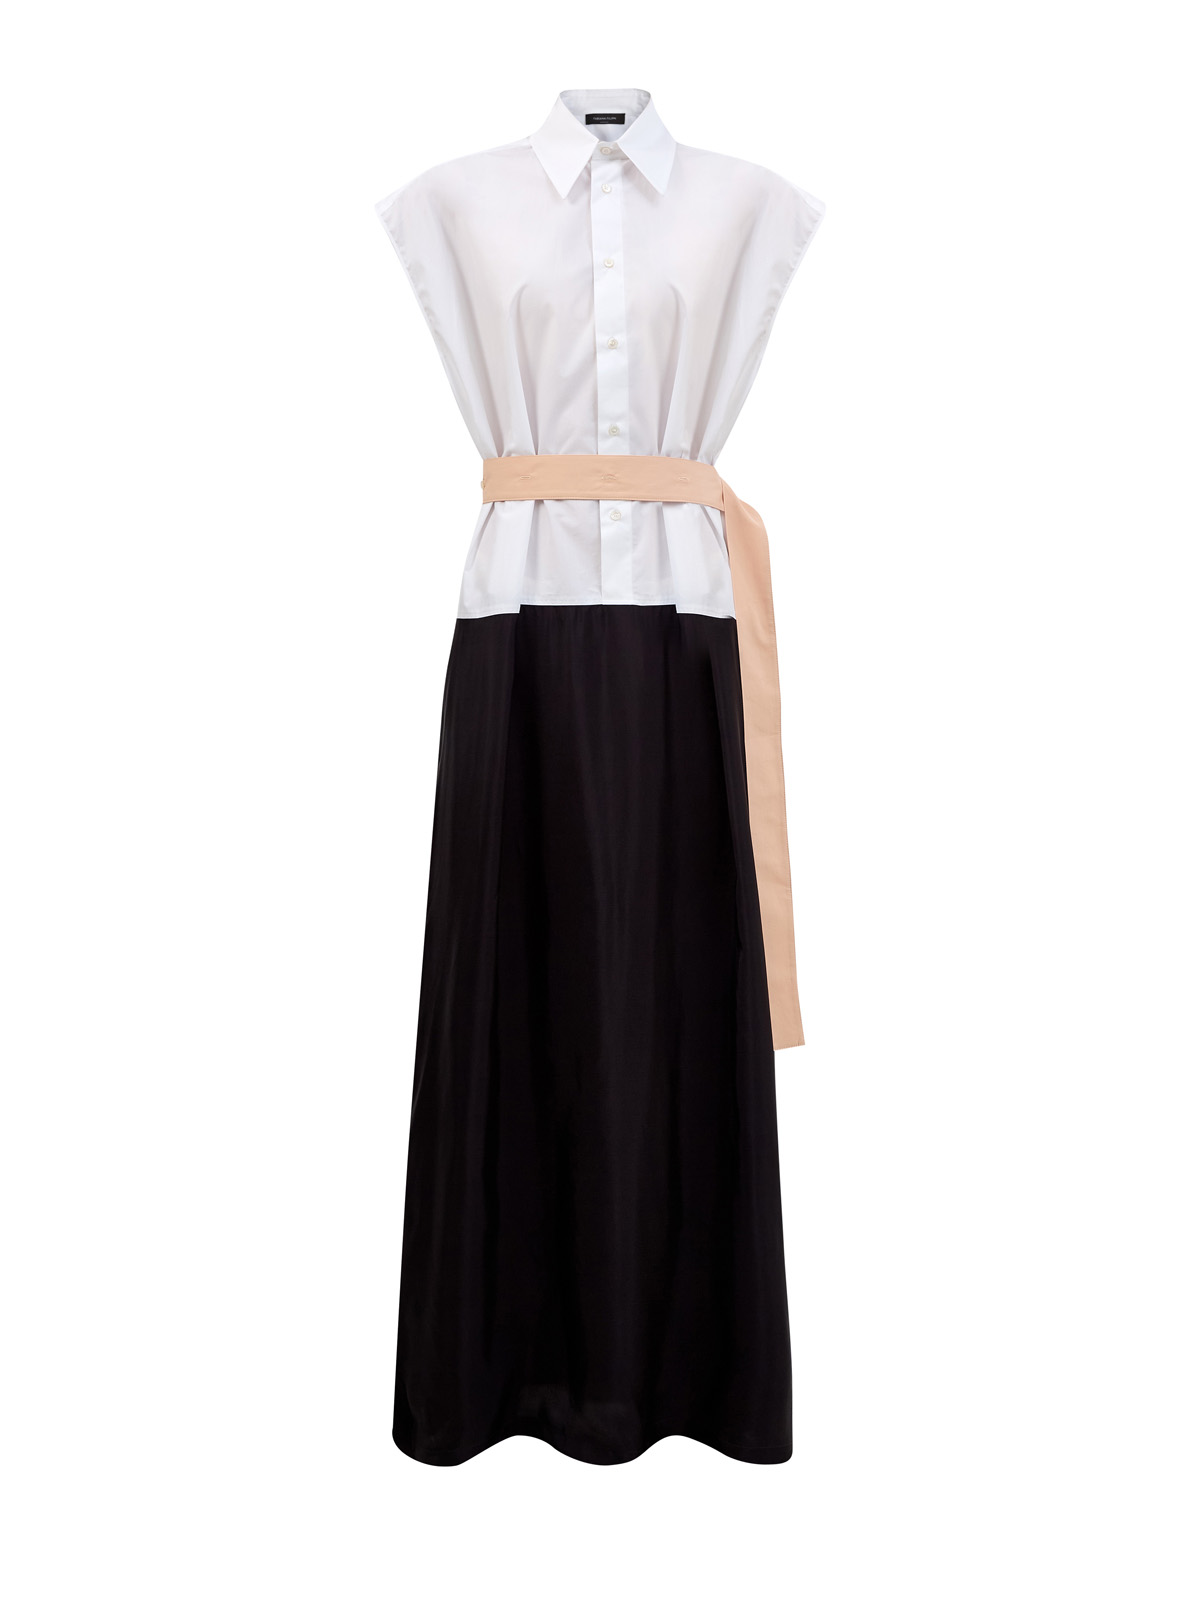 Хлопковое платье-рубашка в стиле colorblock с контрастным поясом FABIANA FILIPPI, цвет мульти, размер 40;42